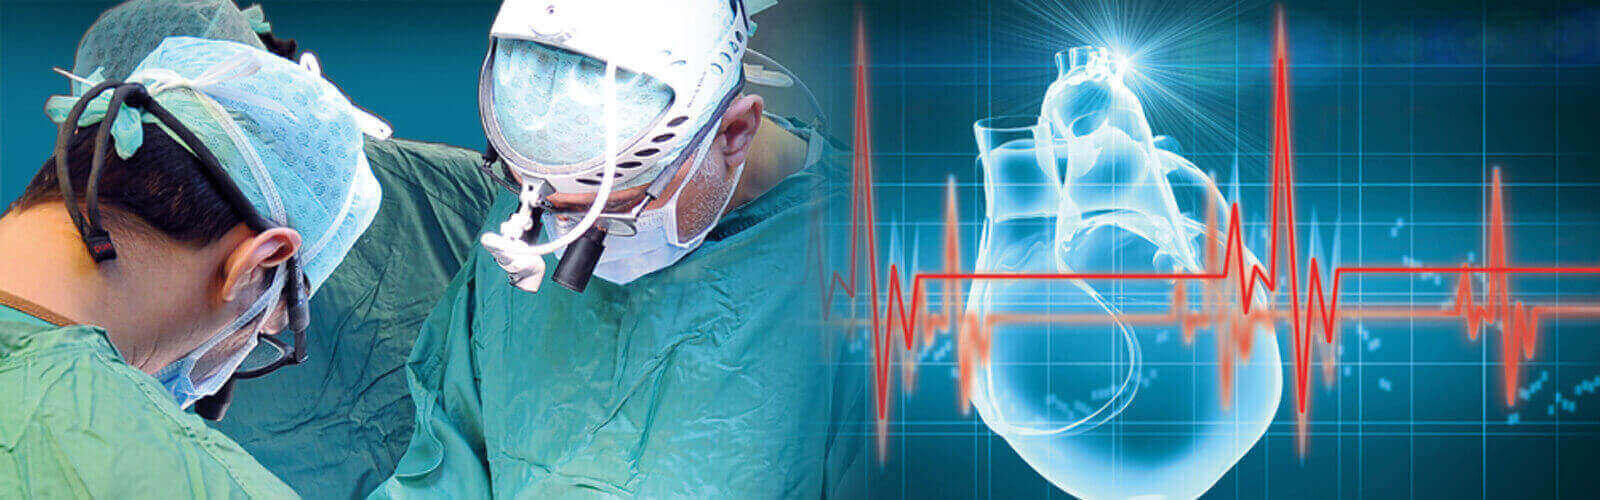 Coronary Angioplasty Surgery in Yemen